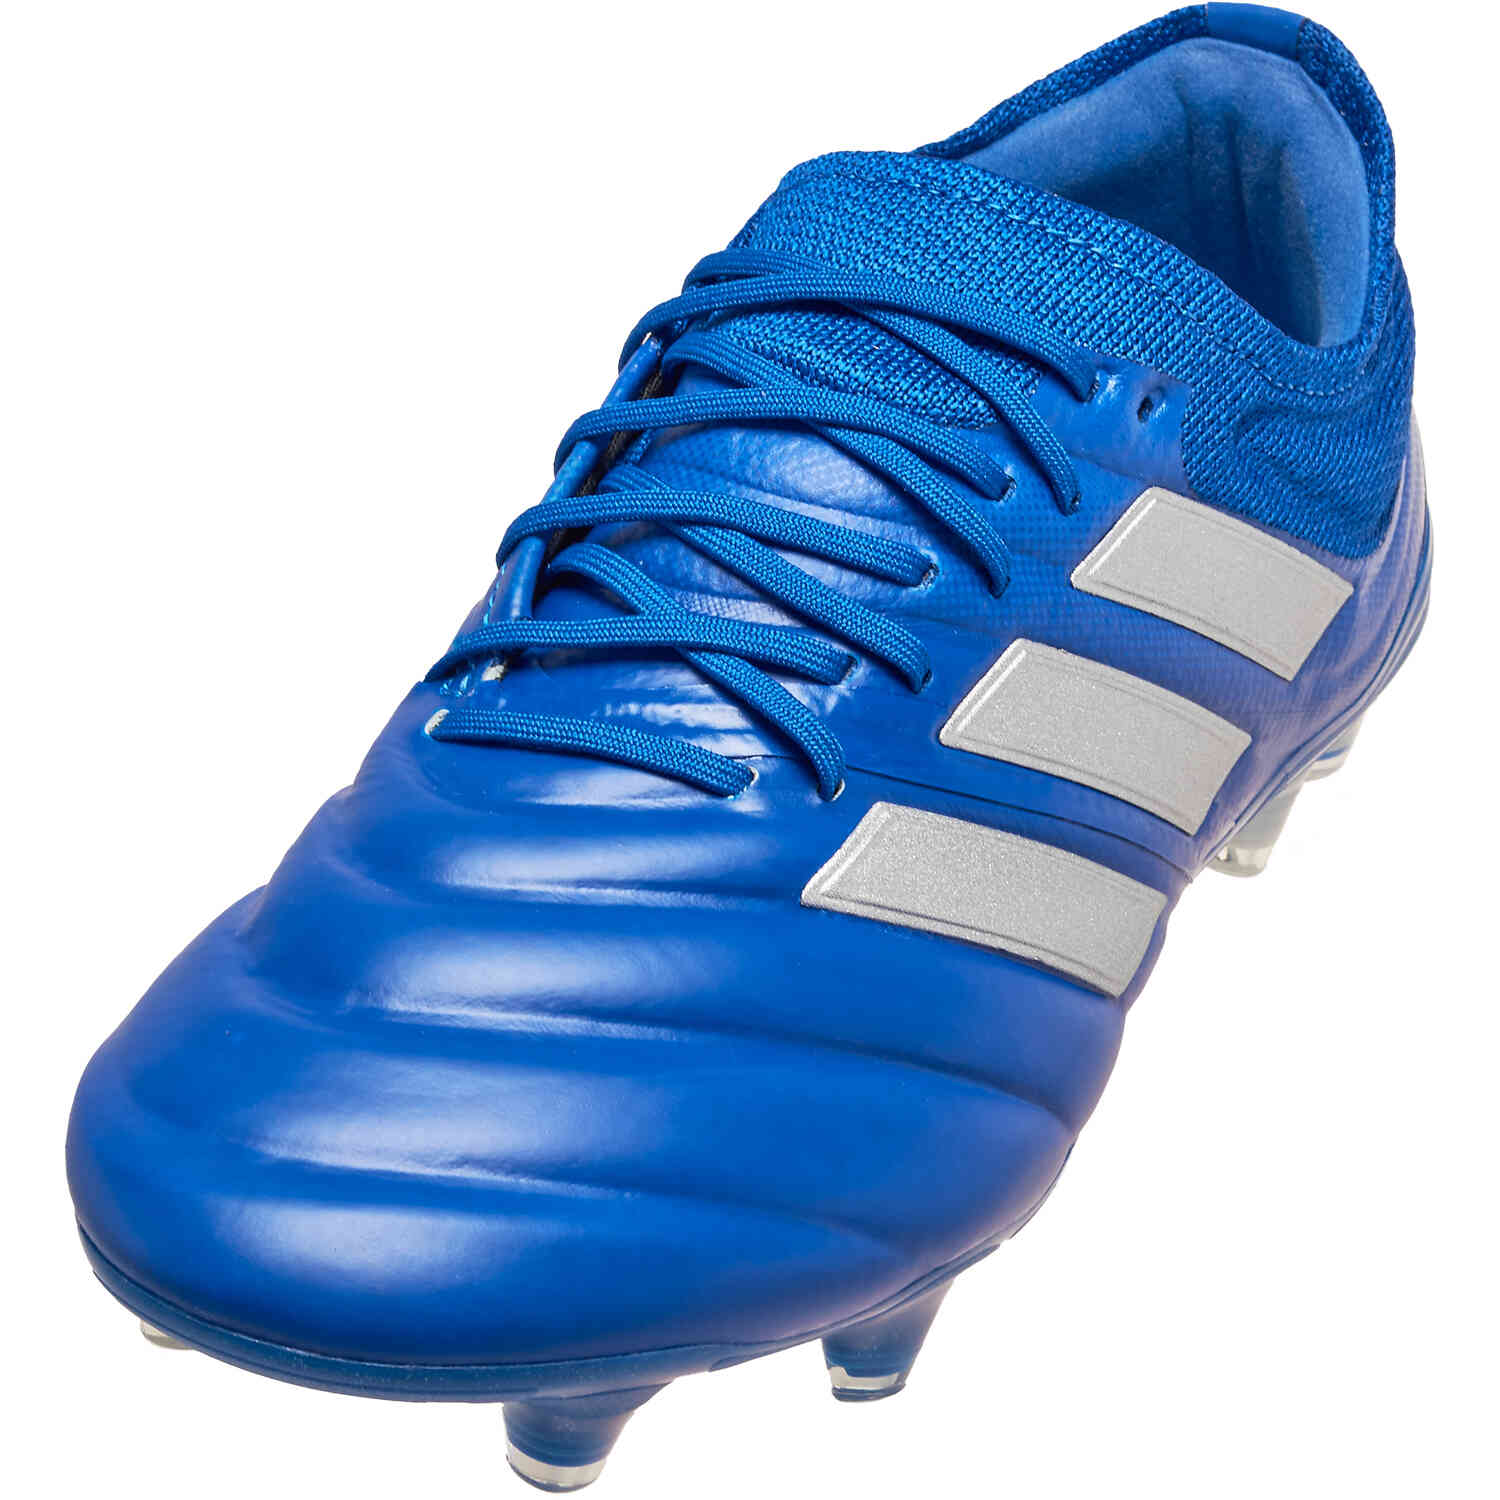 adidas COPA 20.1 FG - InFlight - SoccerPro